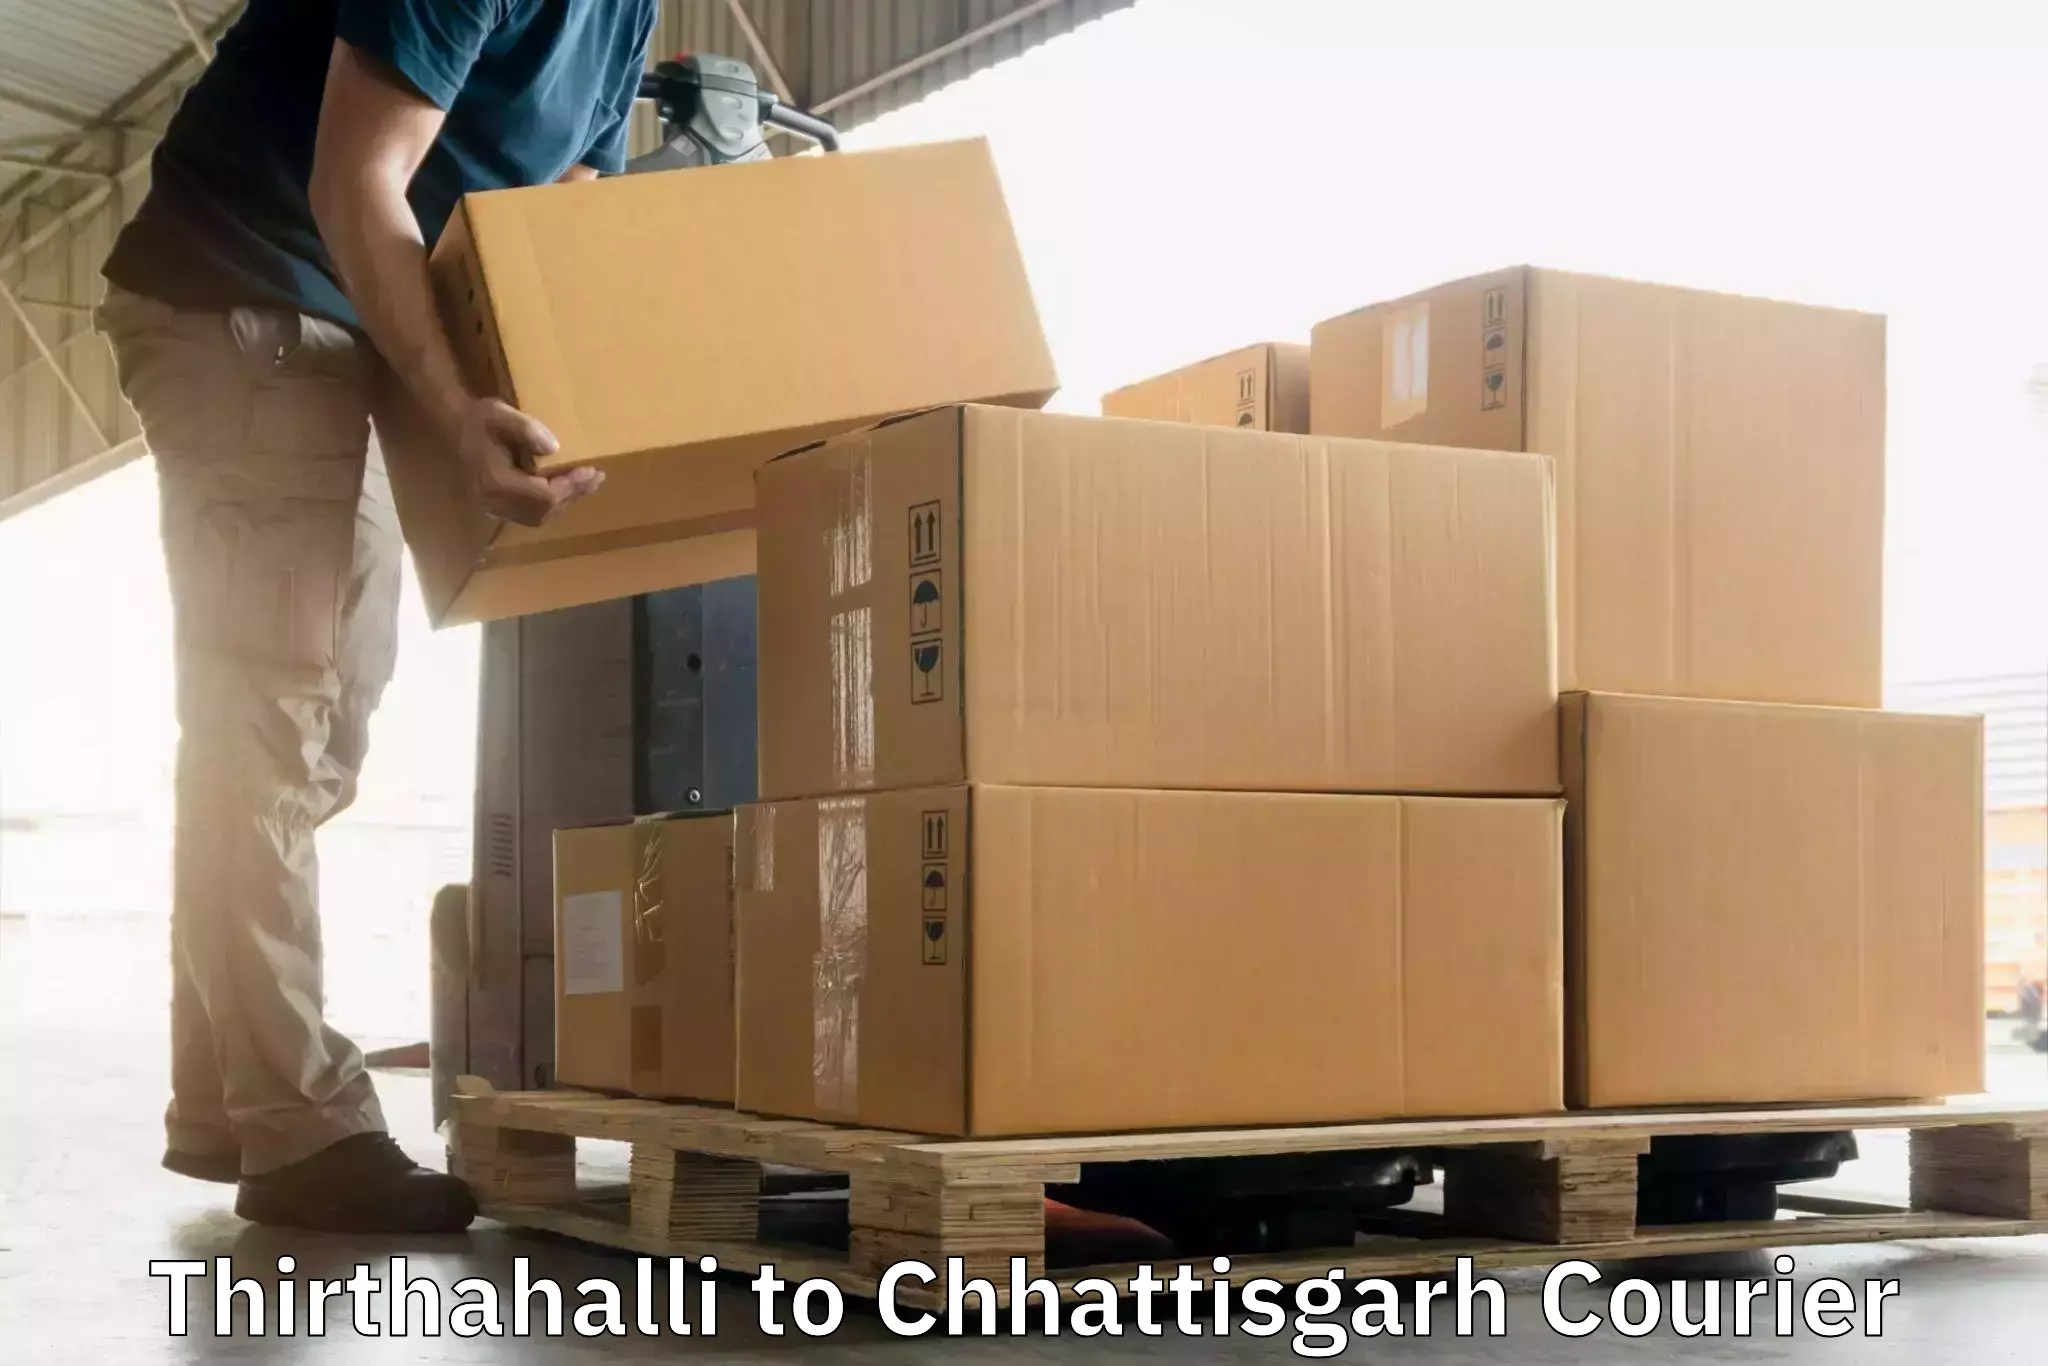 Express package services Thirthahalli to Korea Chhattisgarh